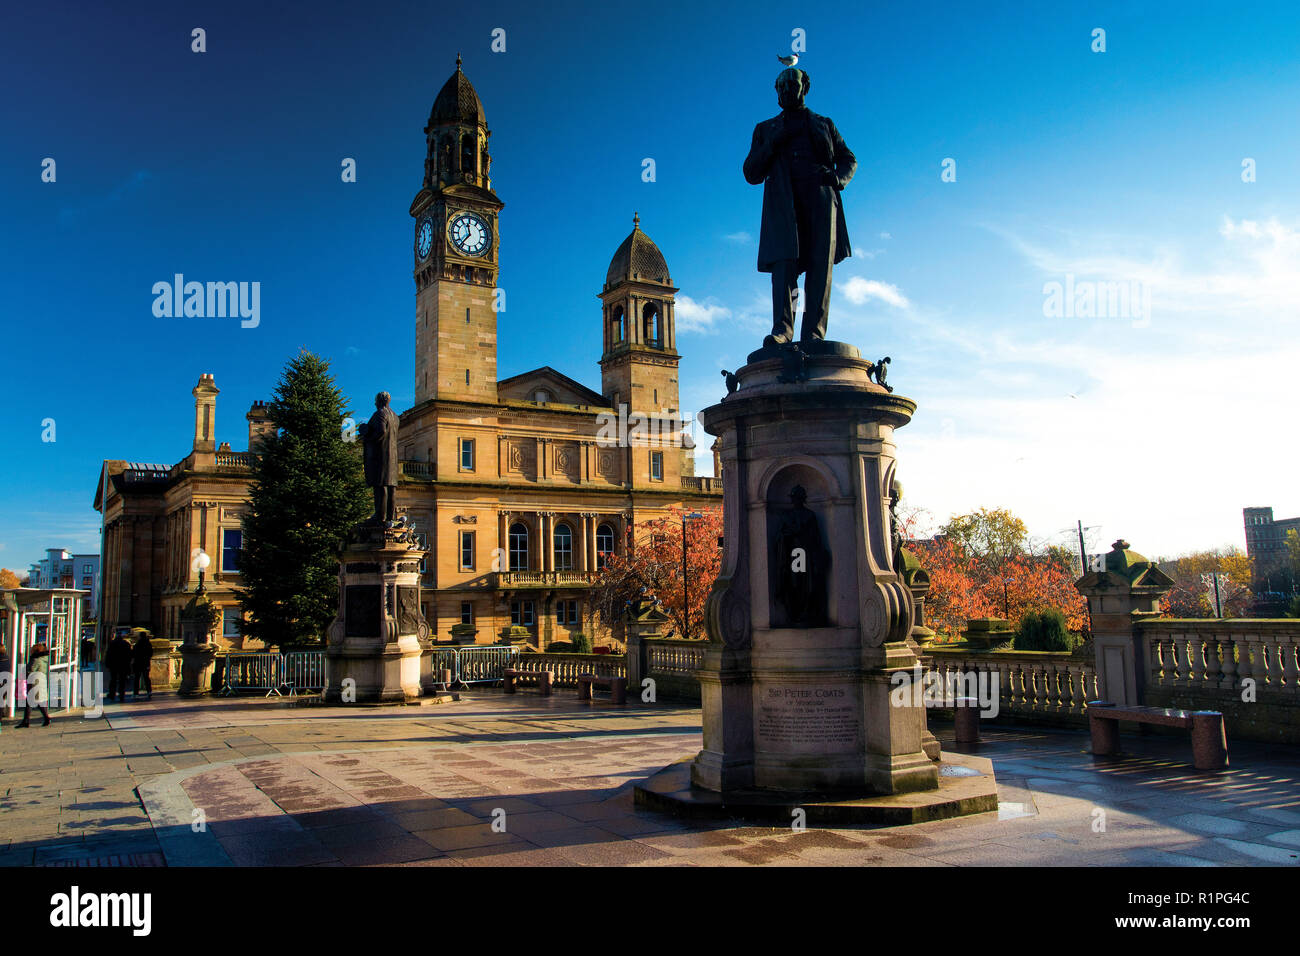 Paisley de ville et la statue de Sir Peter Coats, Paisley, Renfrewshire Banque D'Images